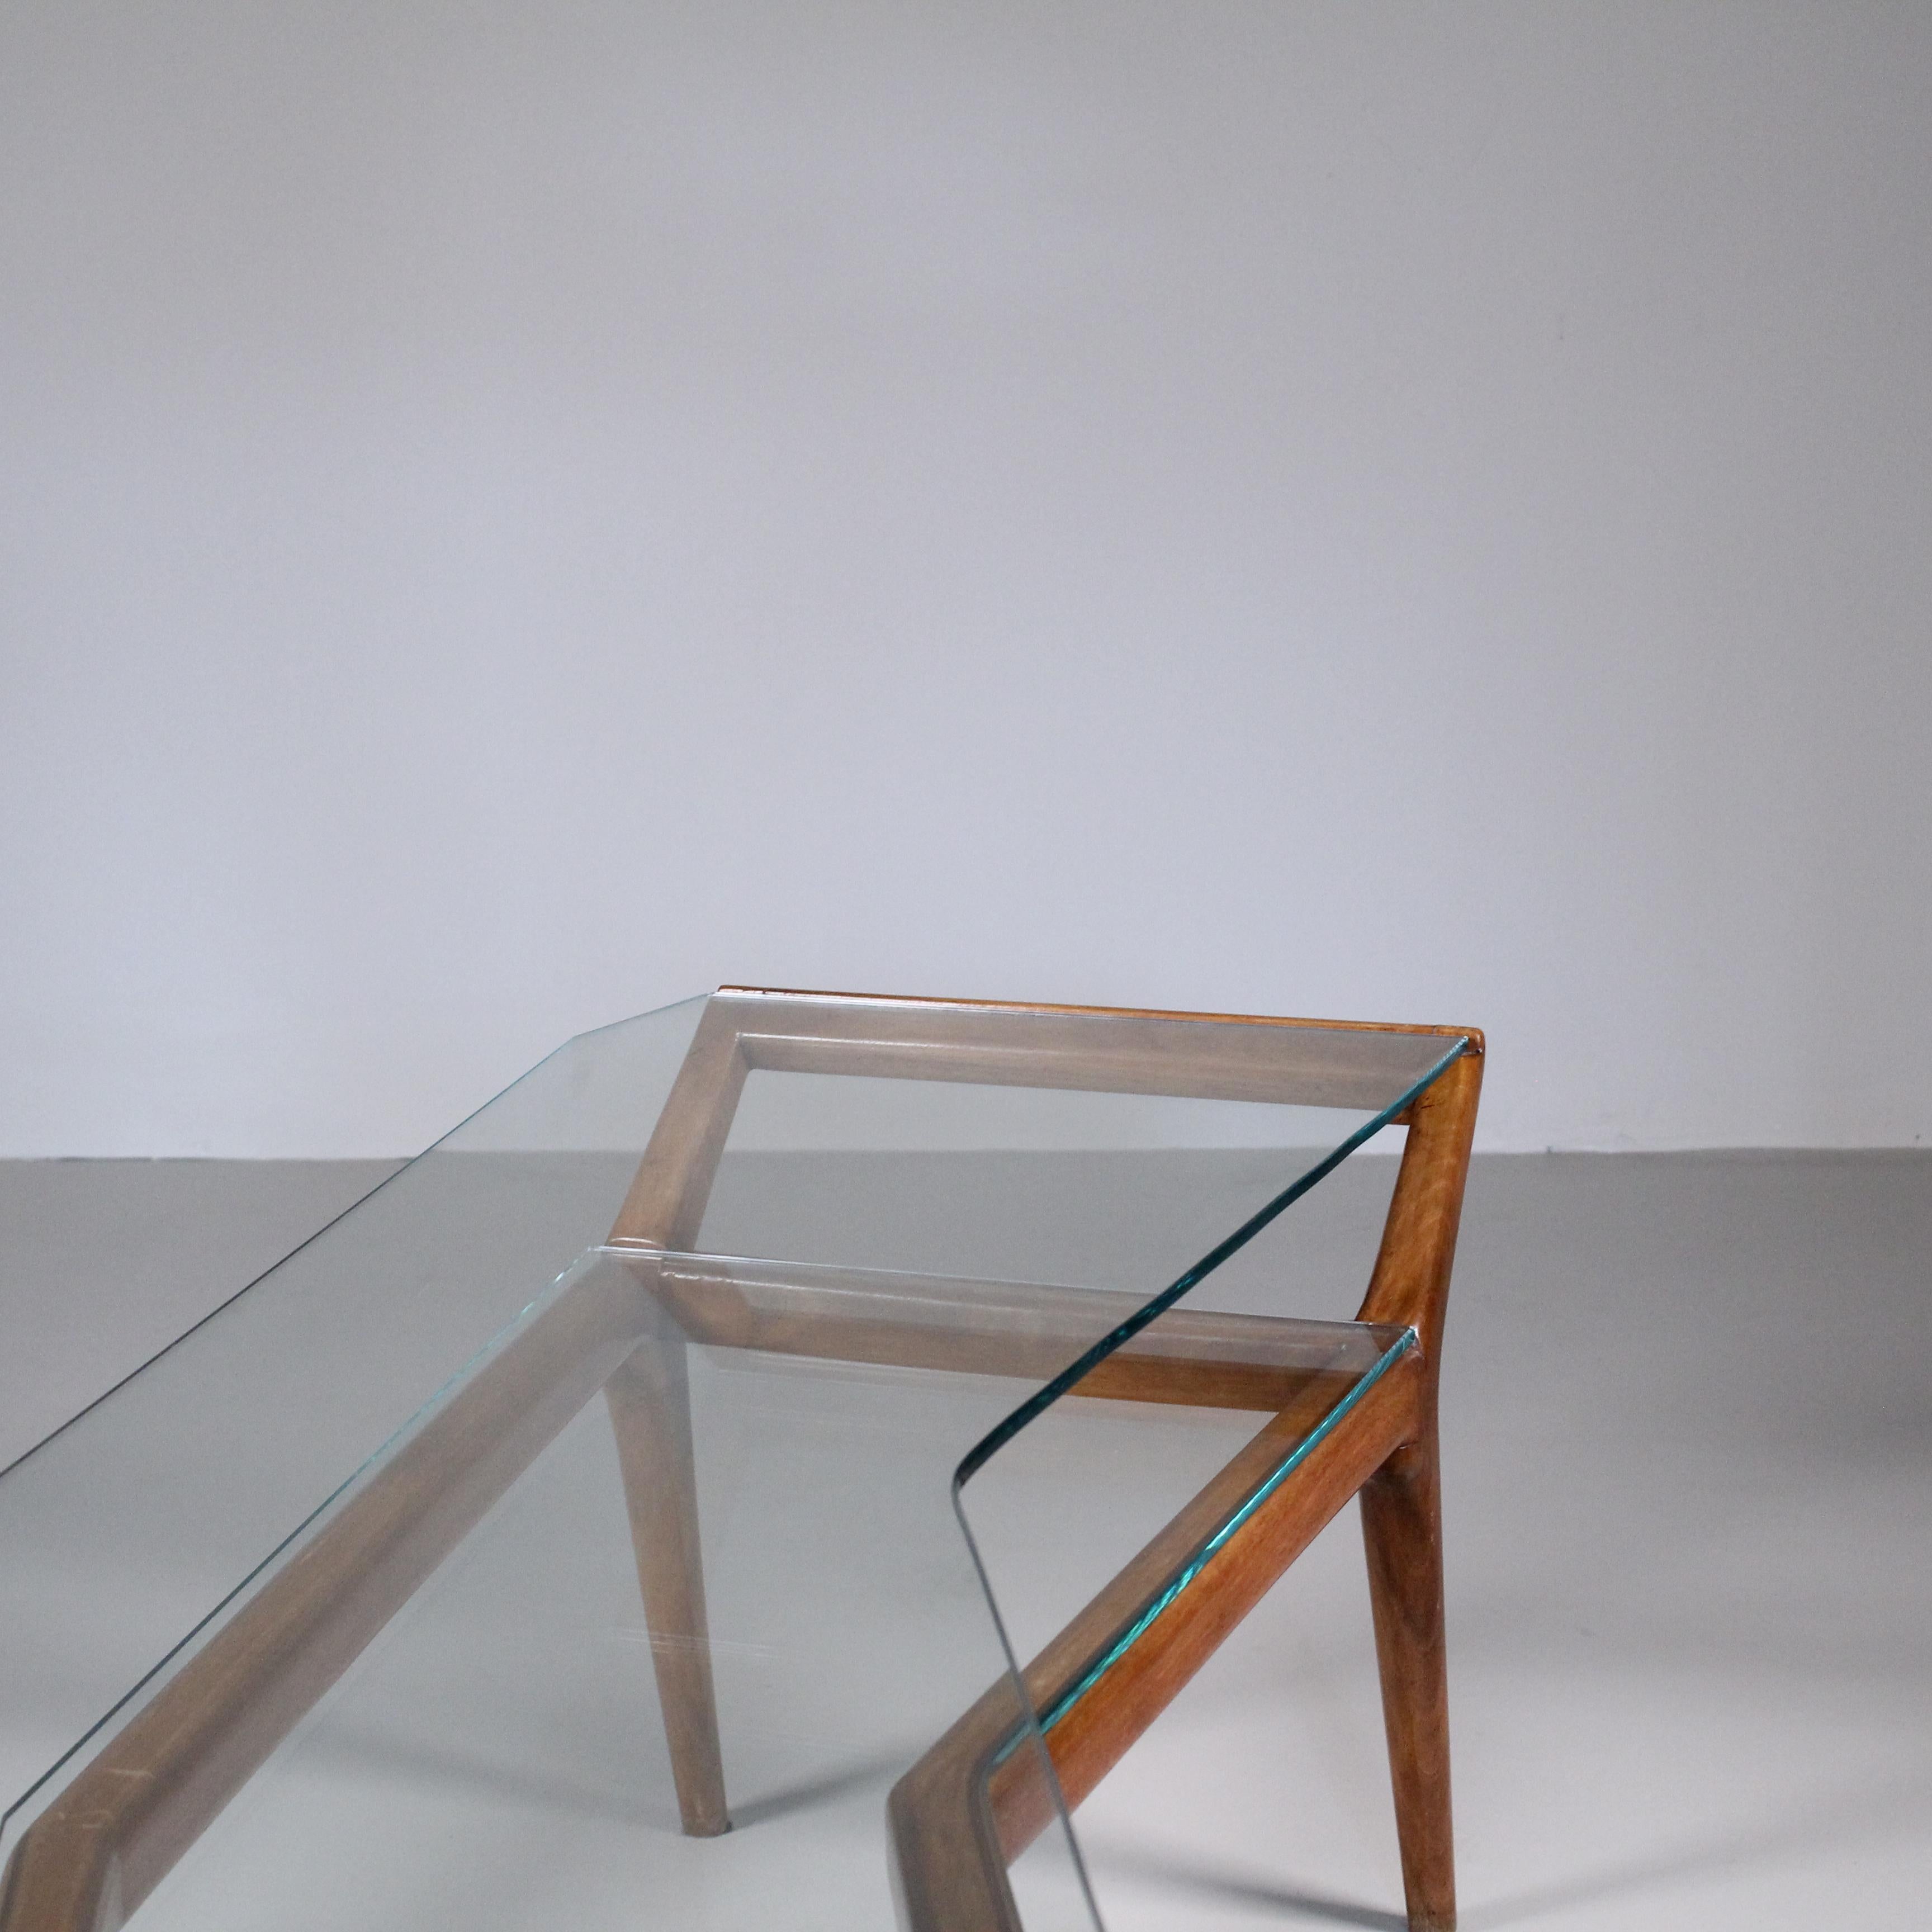 Une table basse au design asymétrique en bois et verre, d'inspiration milieu de siècle, pour laquelle nous ne trouvons malheureusement pas d'attribution. Mais la qualité est si élevée et l'objet de la vie est si incroyable que nous avons du mal à